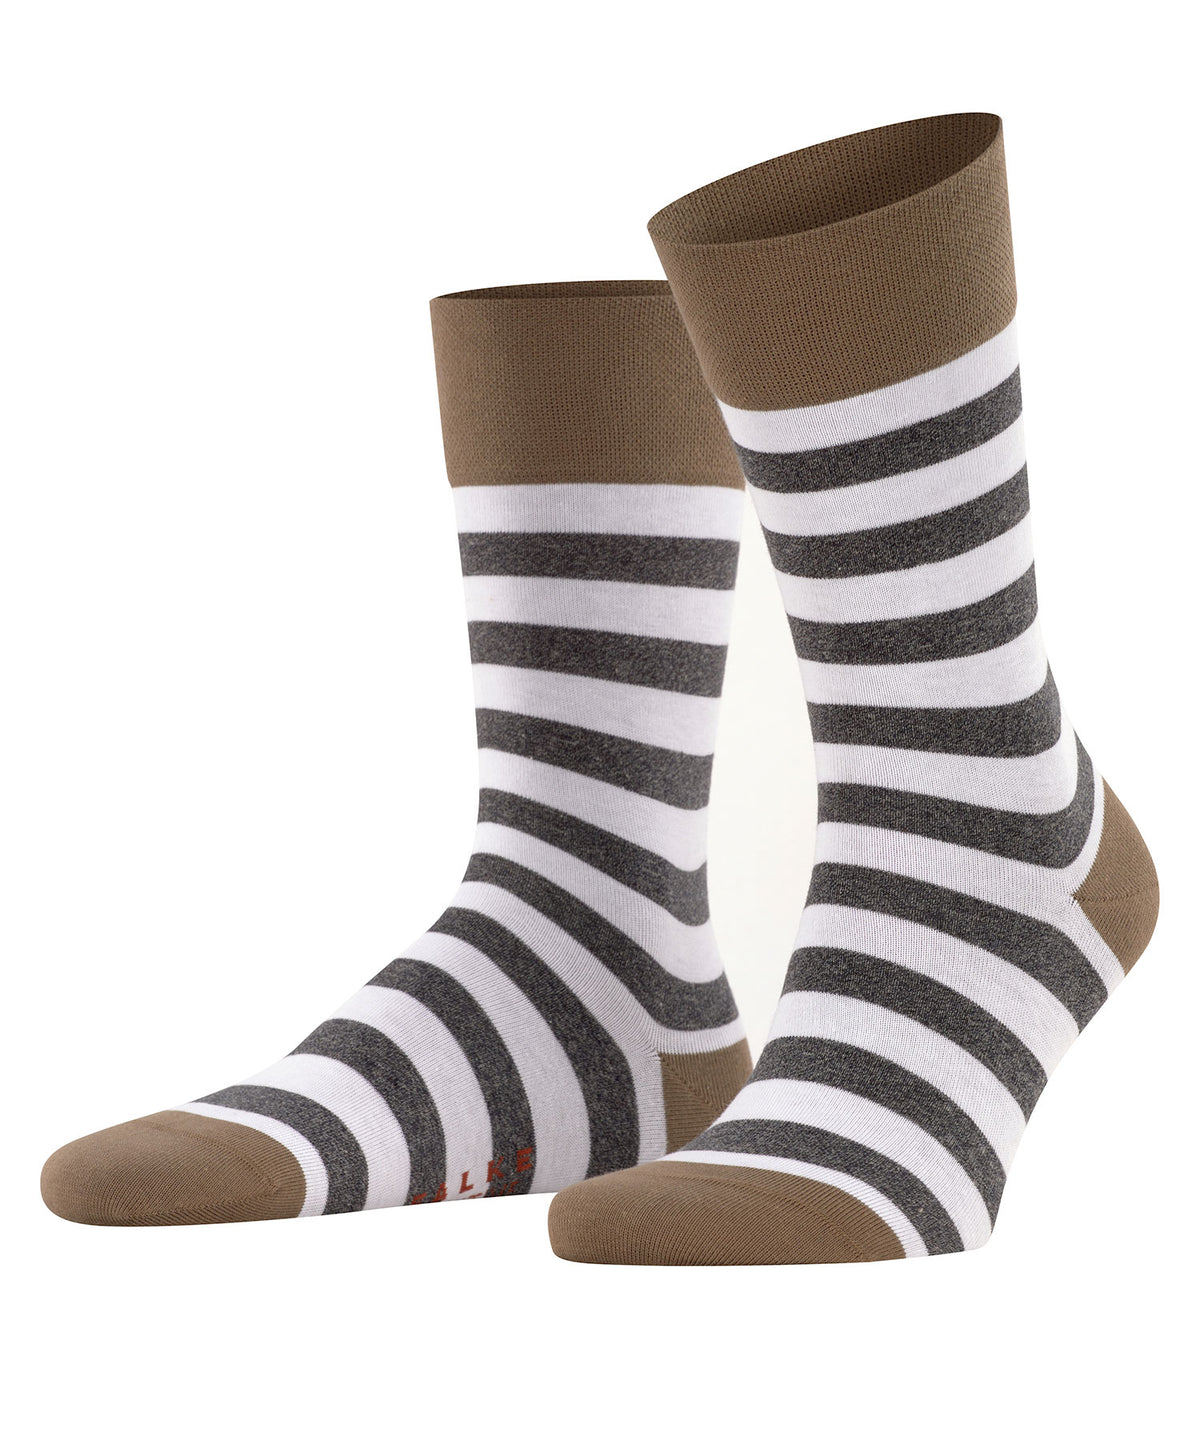 Falke Striped Socks, Men's Big & Tall